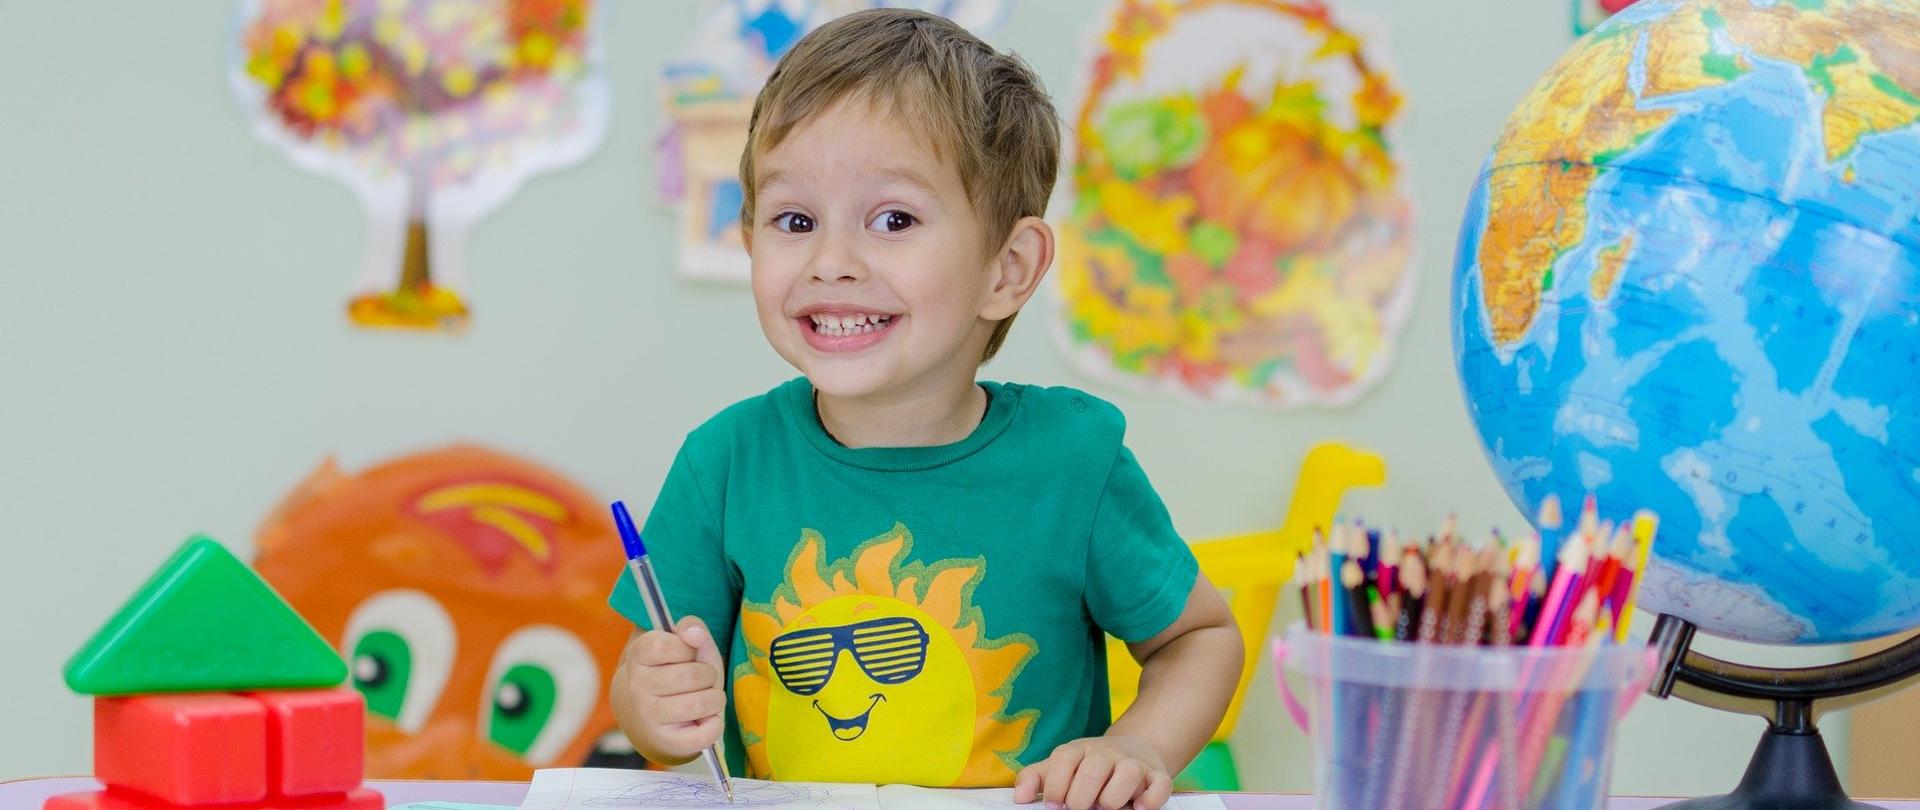 W centralnej części zdjęcia znajduje się uśmiechnięty chłopiec, siedzący za stołem. Maluje rysunek długopisem. Na stole, przy którym siedzi znajduje się przybory szkolne oraz - po prawej stronie - duży globus. W tle kolorowa ściana a na niej liczne naklejki edukacyjne. 